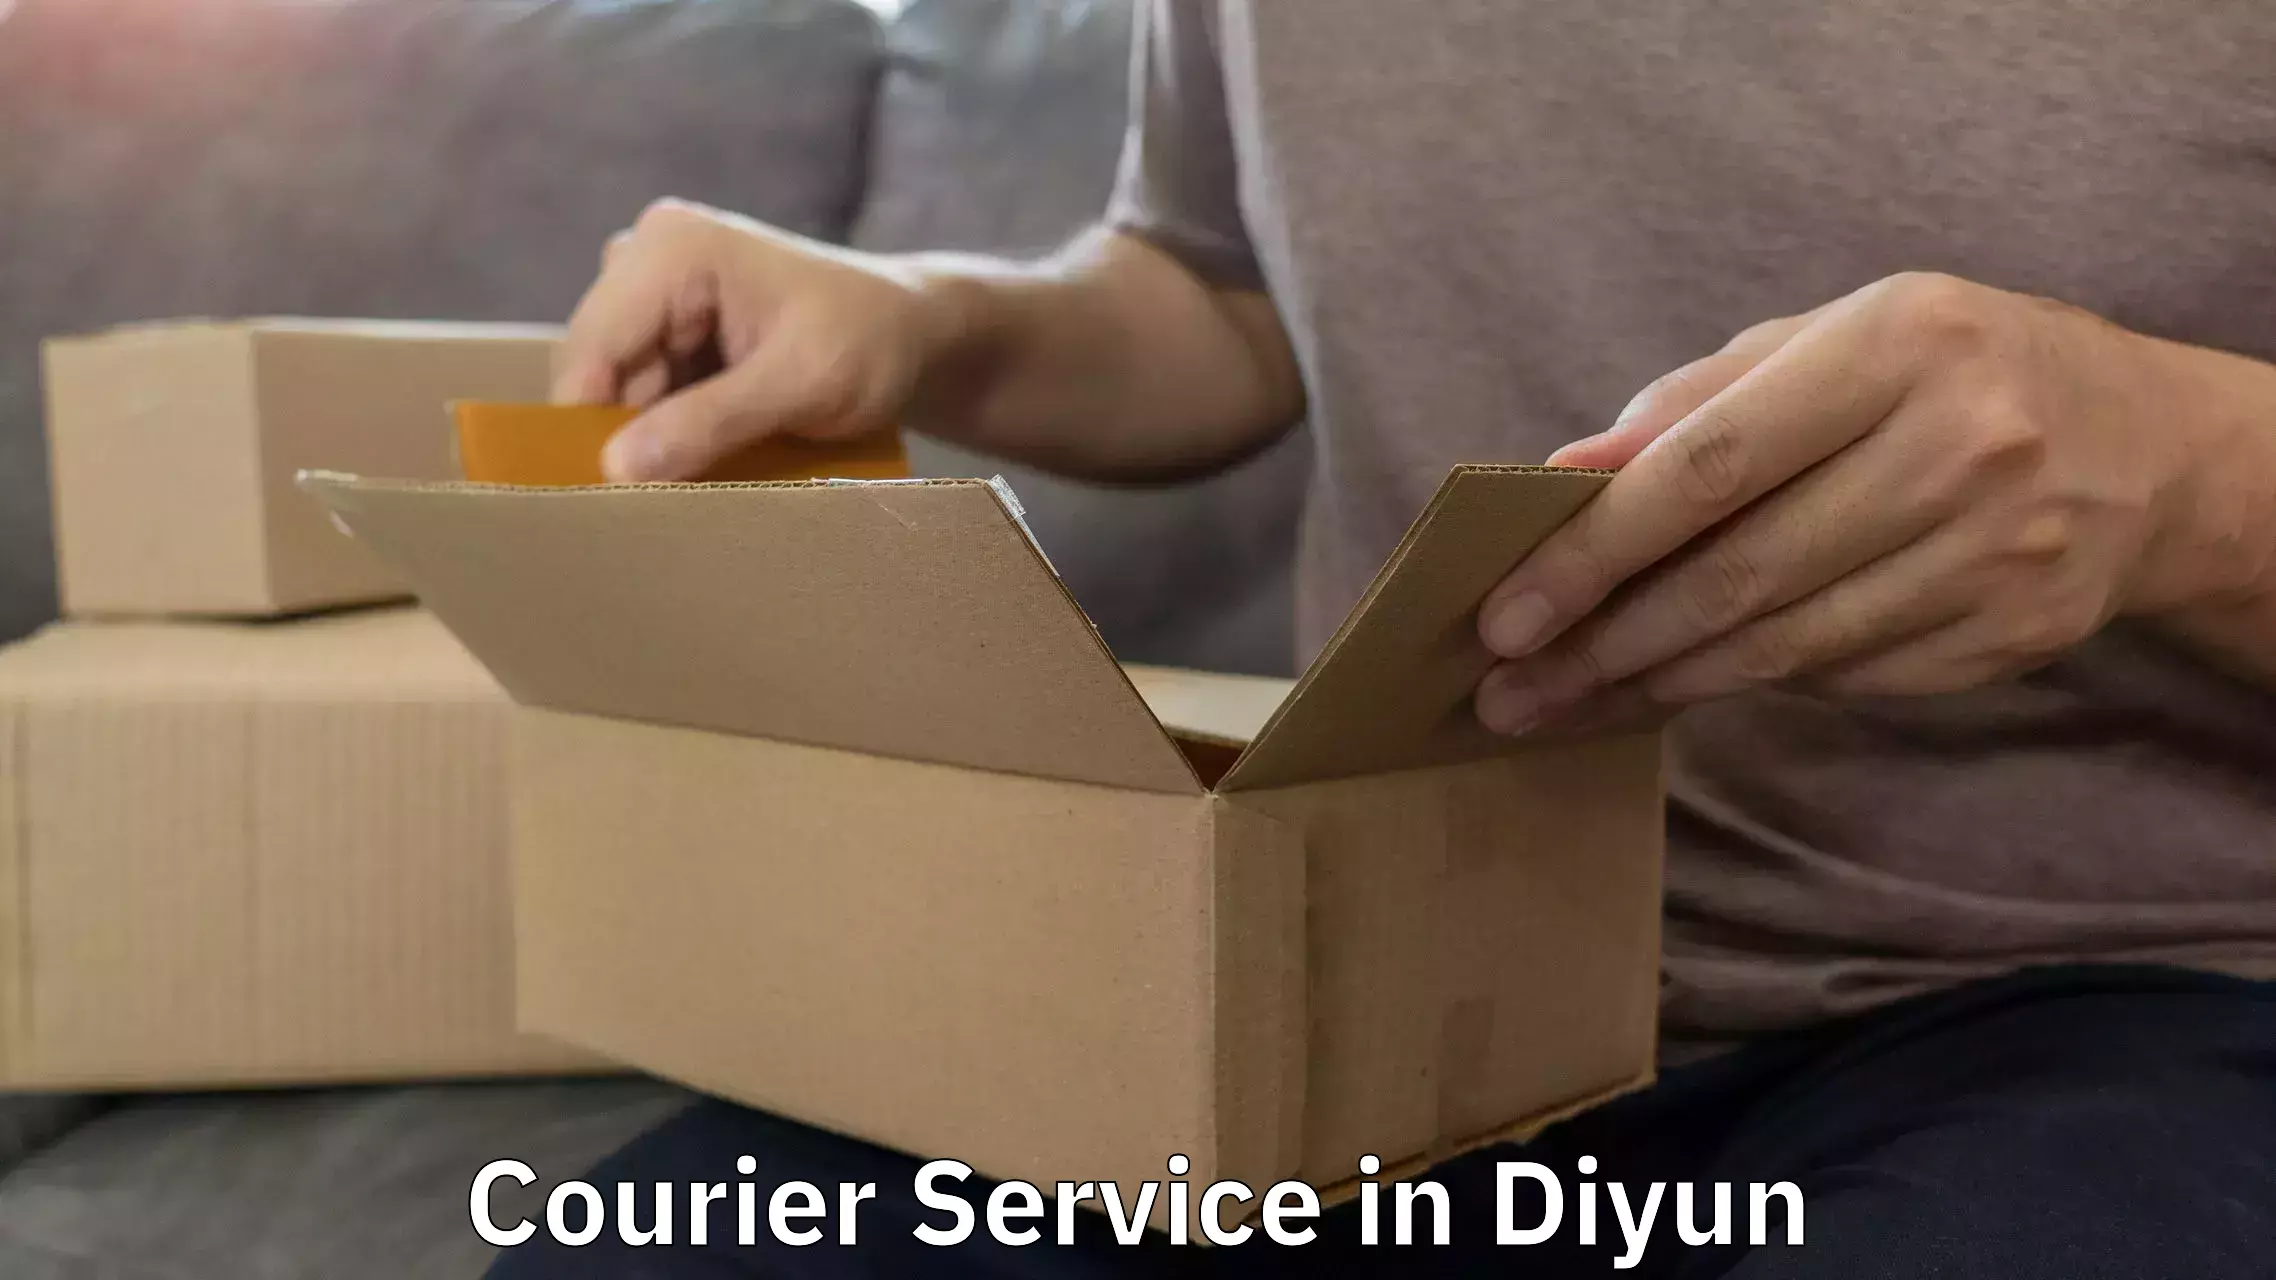 Digital courier platforms in Diyun